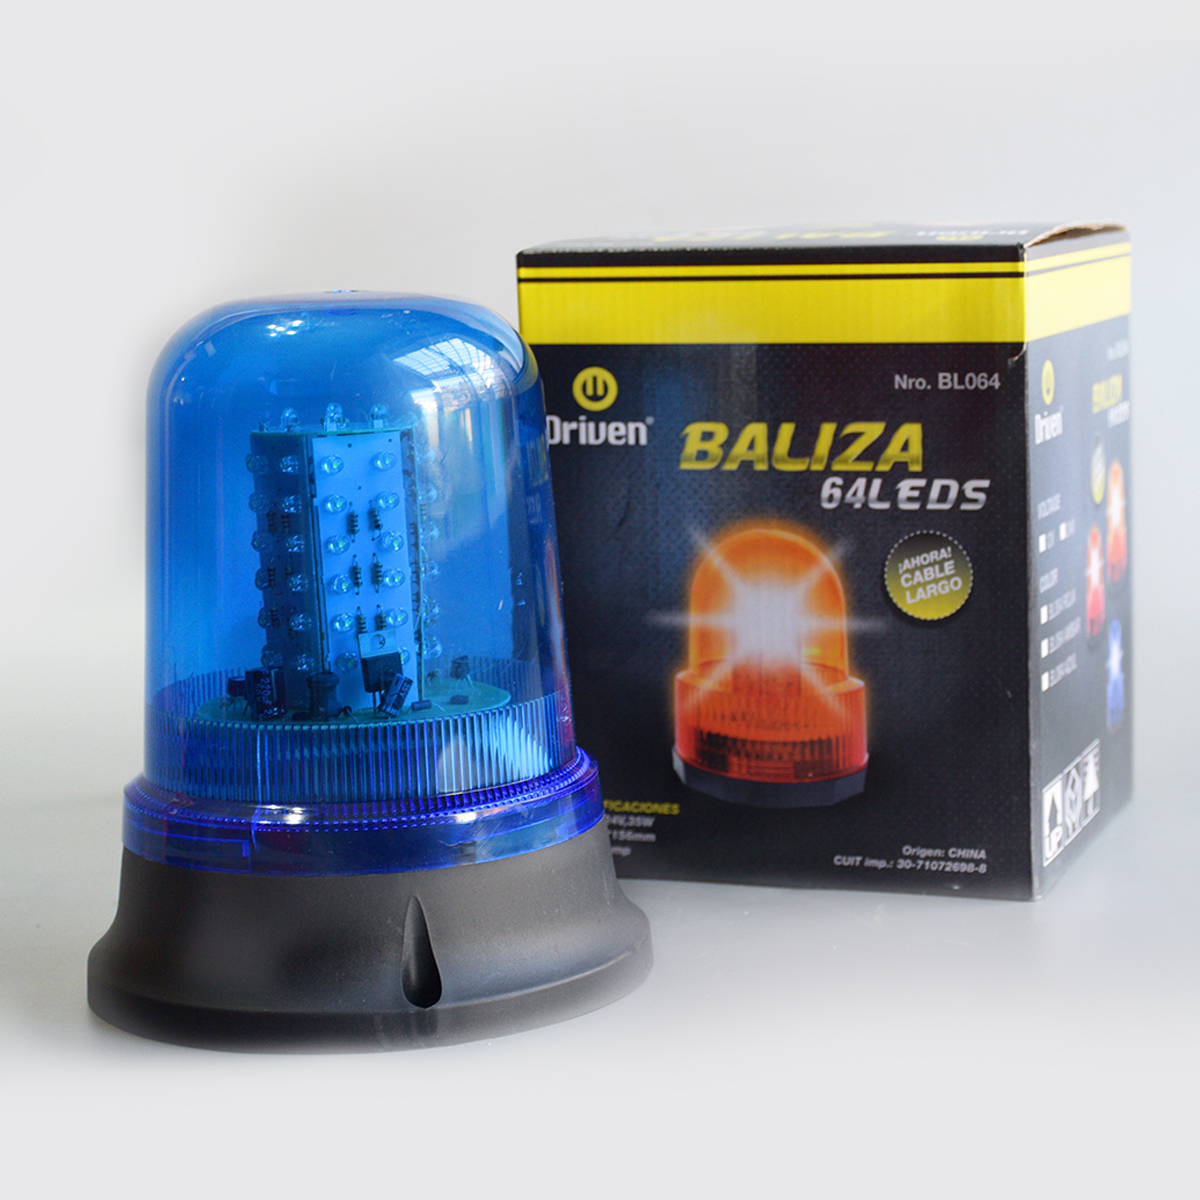 BL064-ROJA BALIZA 64 LEDS MULTIVOLTAJE 12 Y 24 VOLTS - DRIVEN